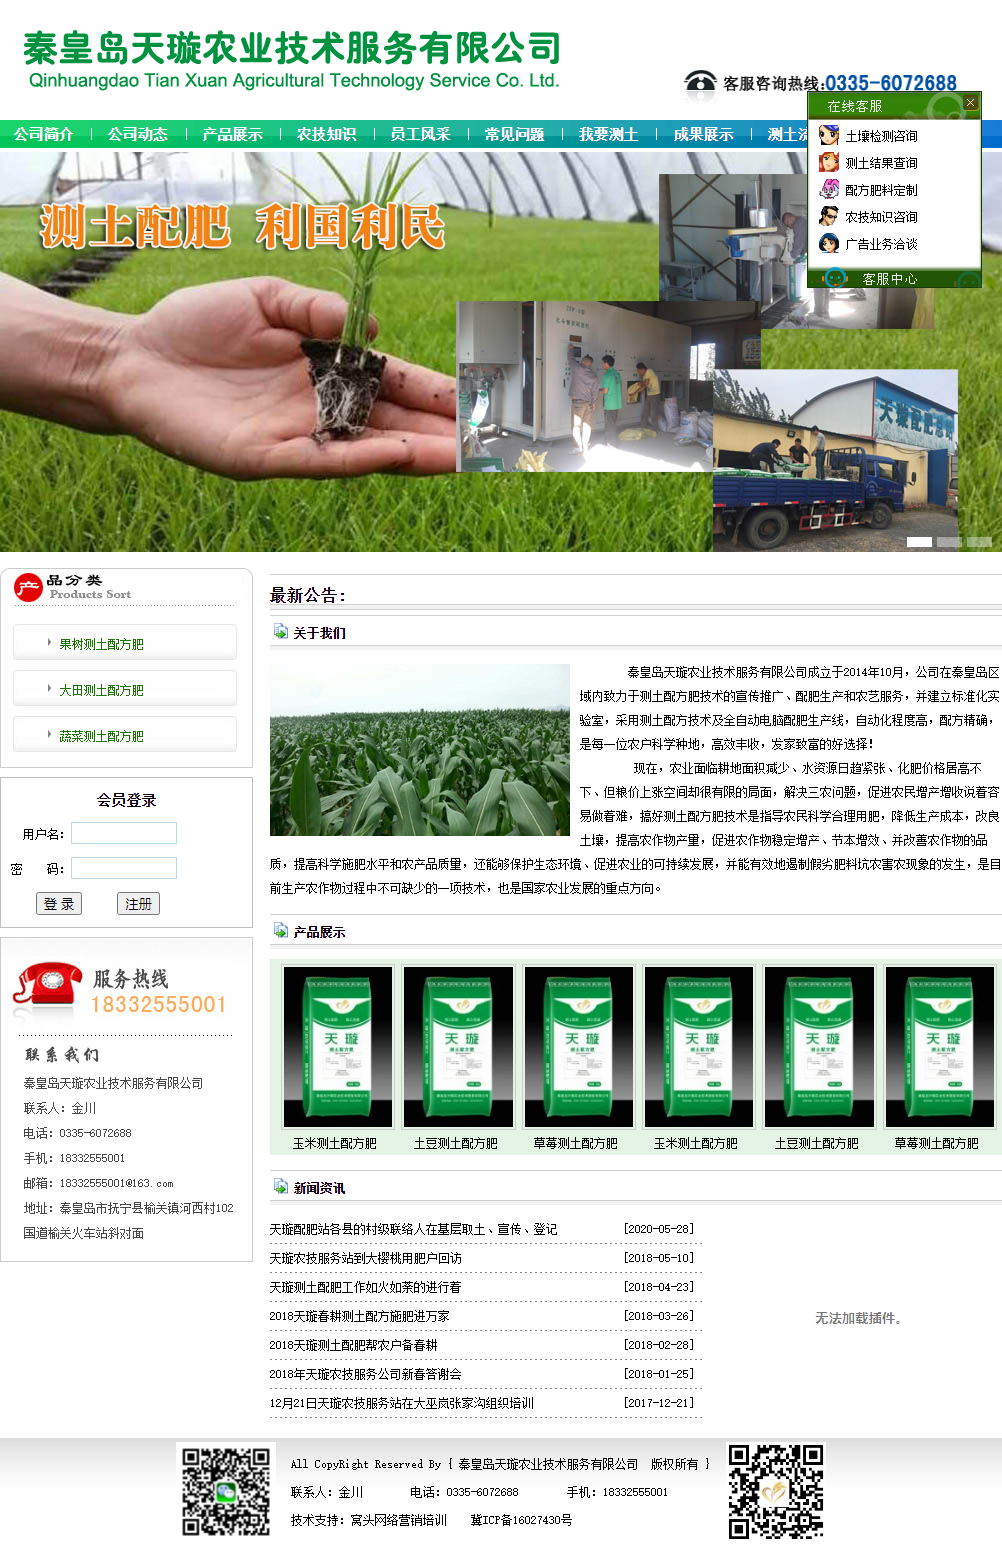 秦皇岛天璇农业技术服务有限公司网站案例